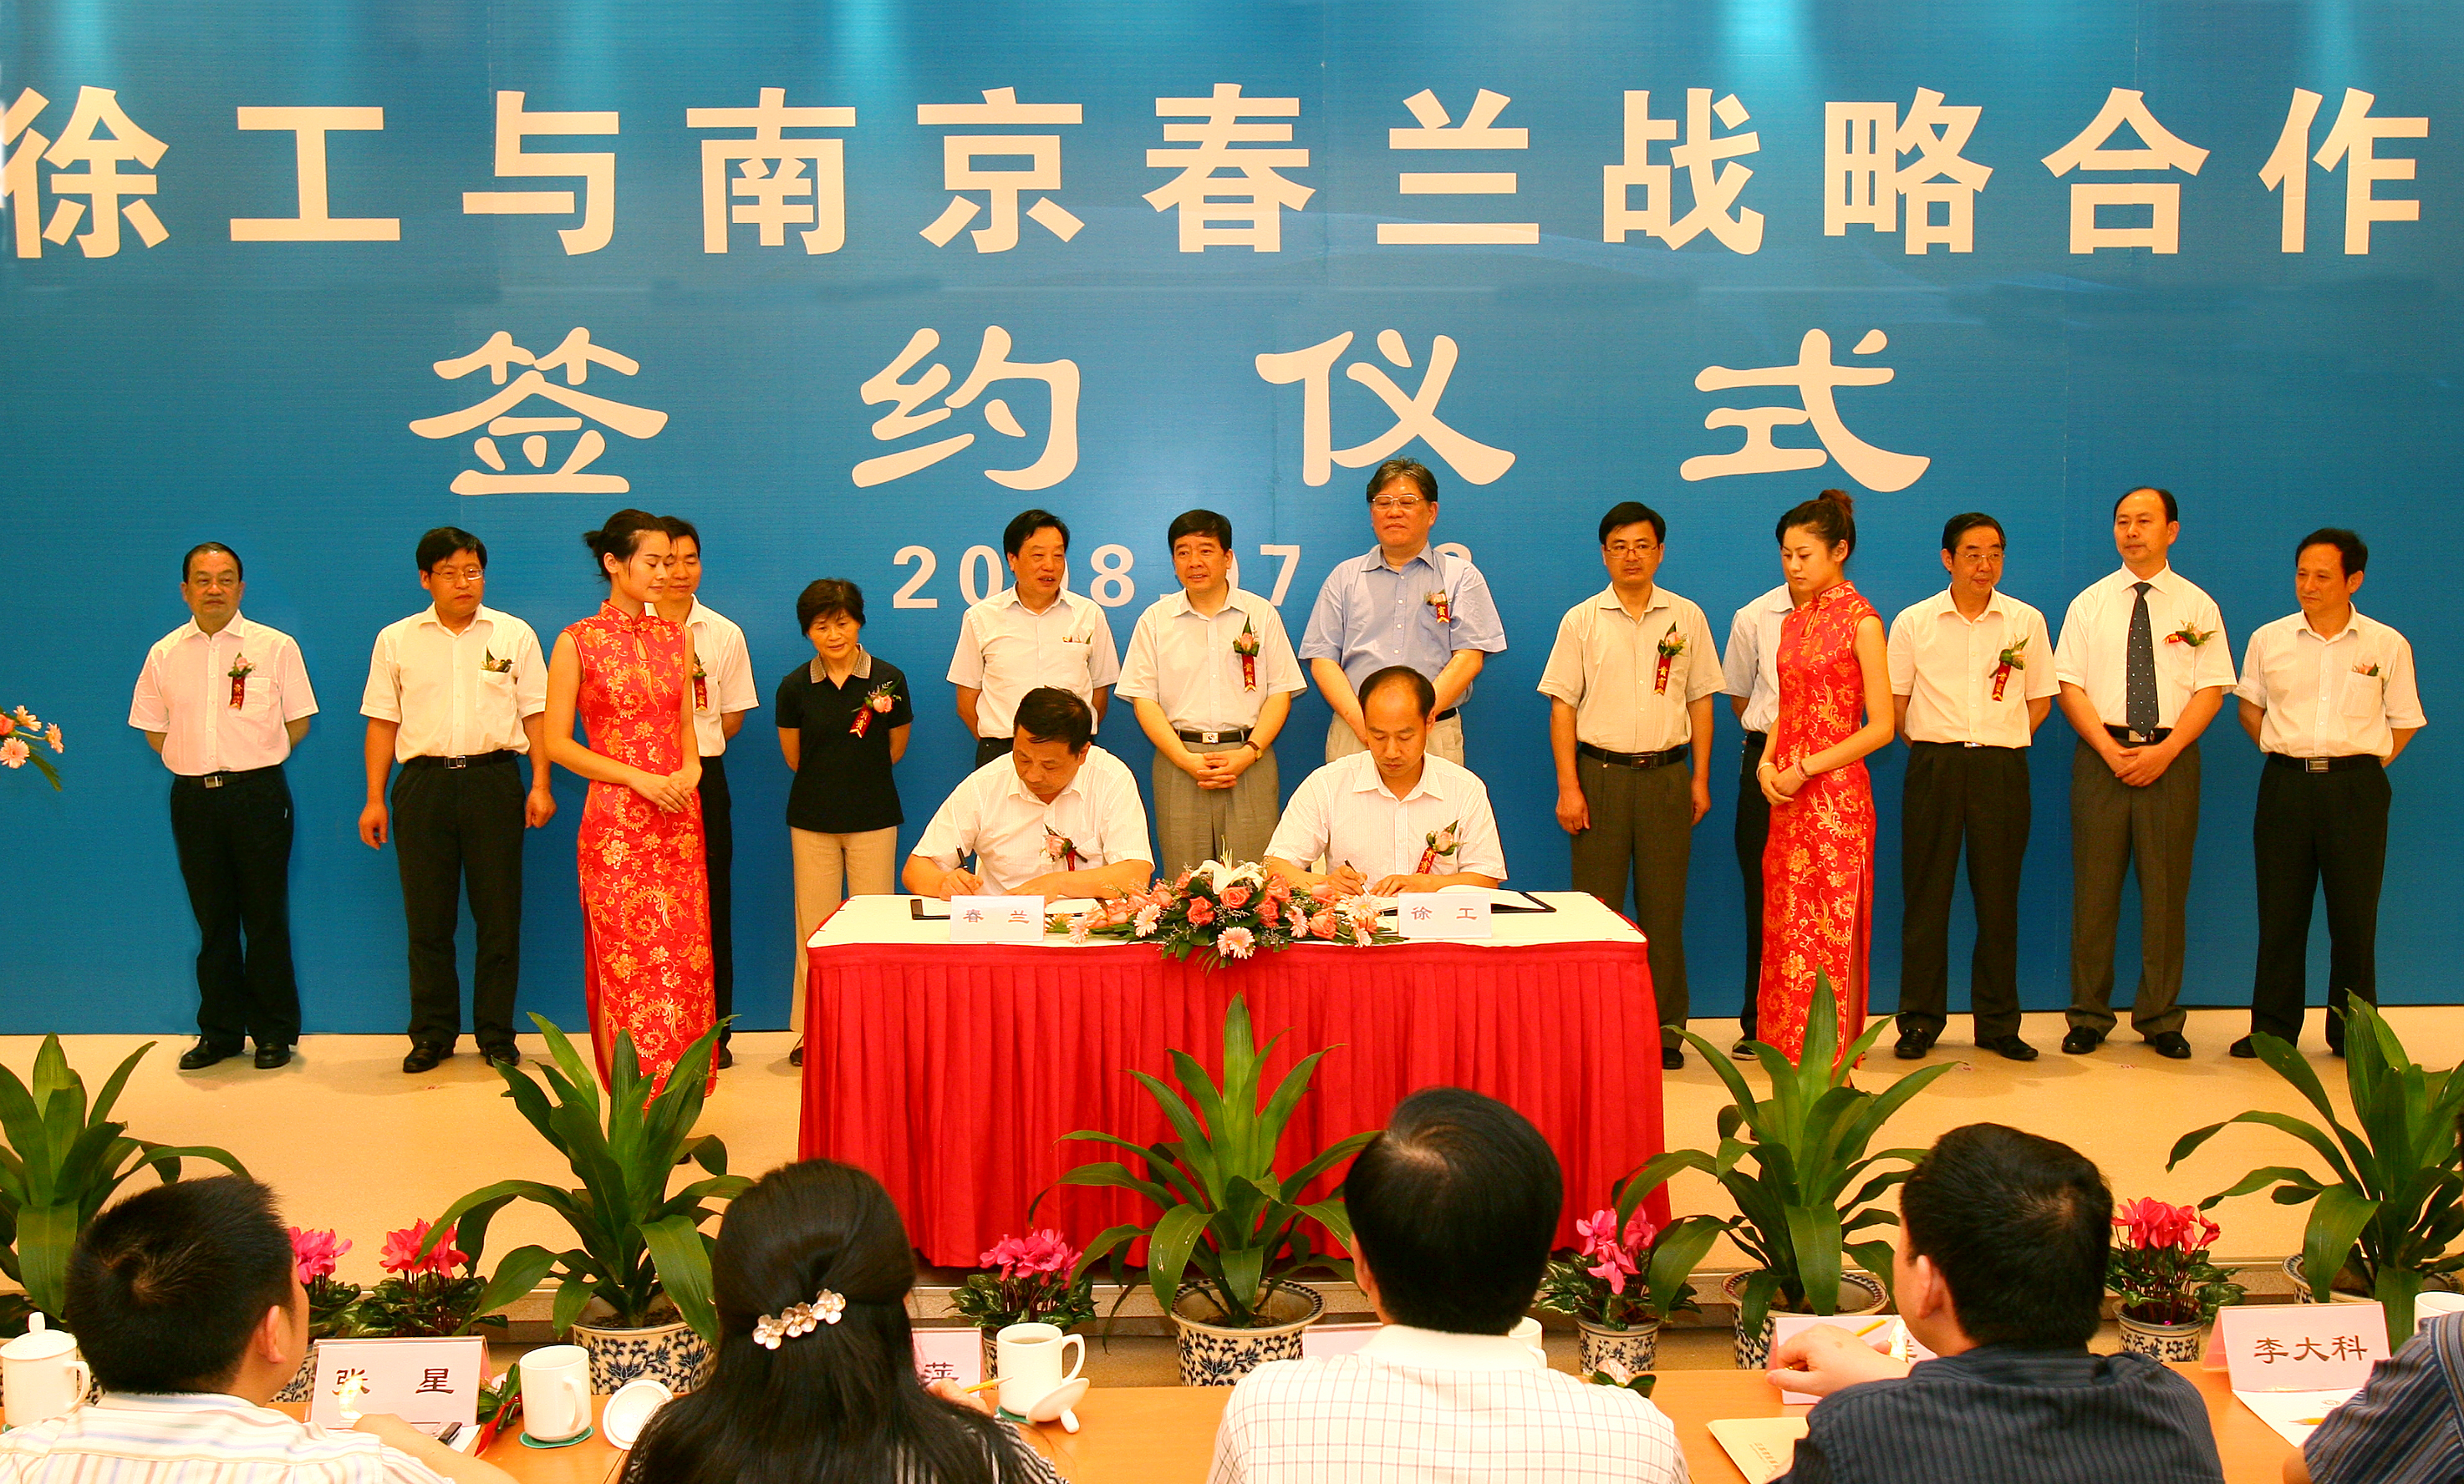 牛宝收购南京春兰汽车制造有限公司并更名为南京牛宝汽车制造有限公司